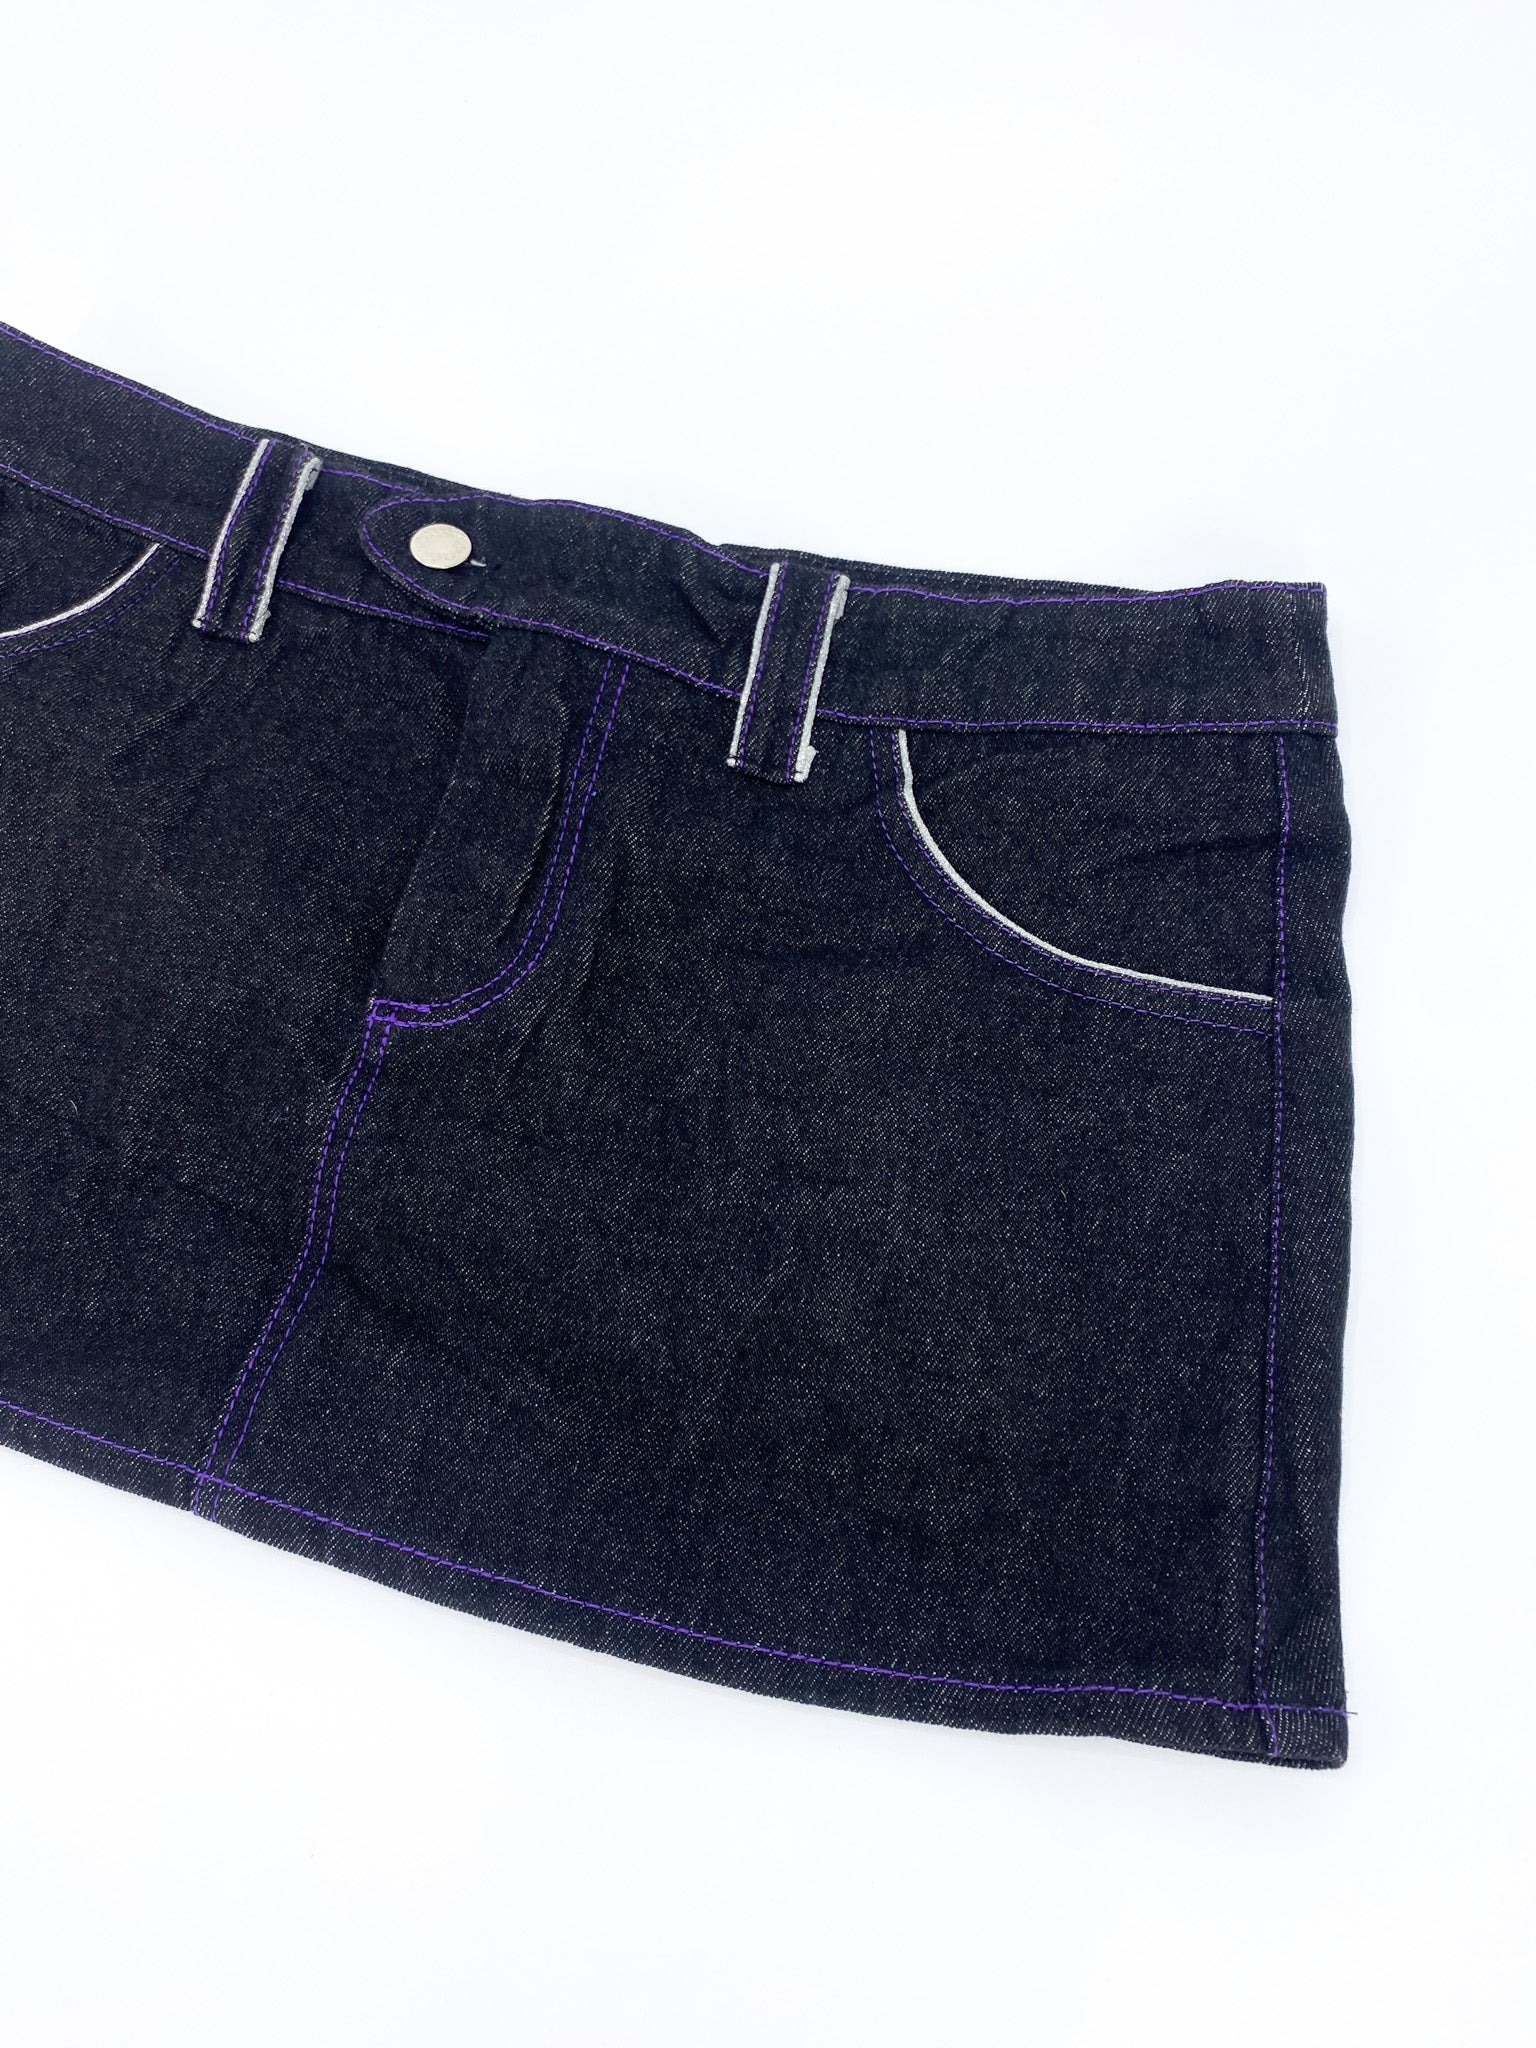 Vintage 00's Black/Purple Mini Skirt - M - Playground Vintage